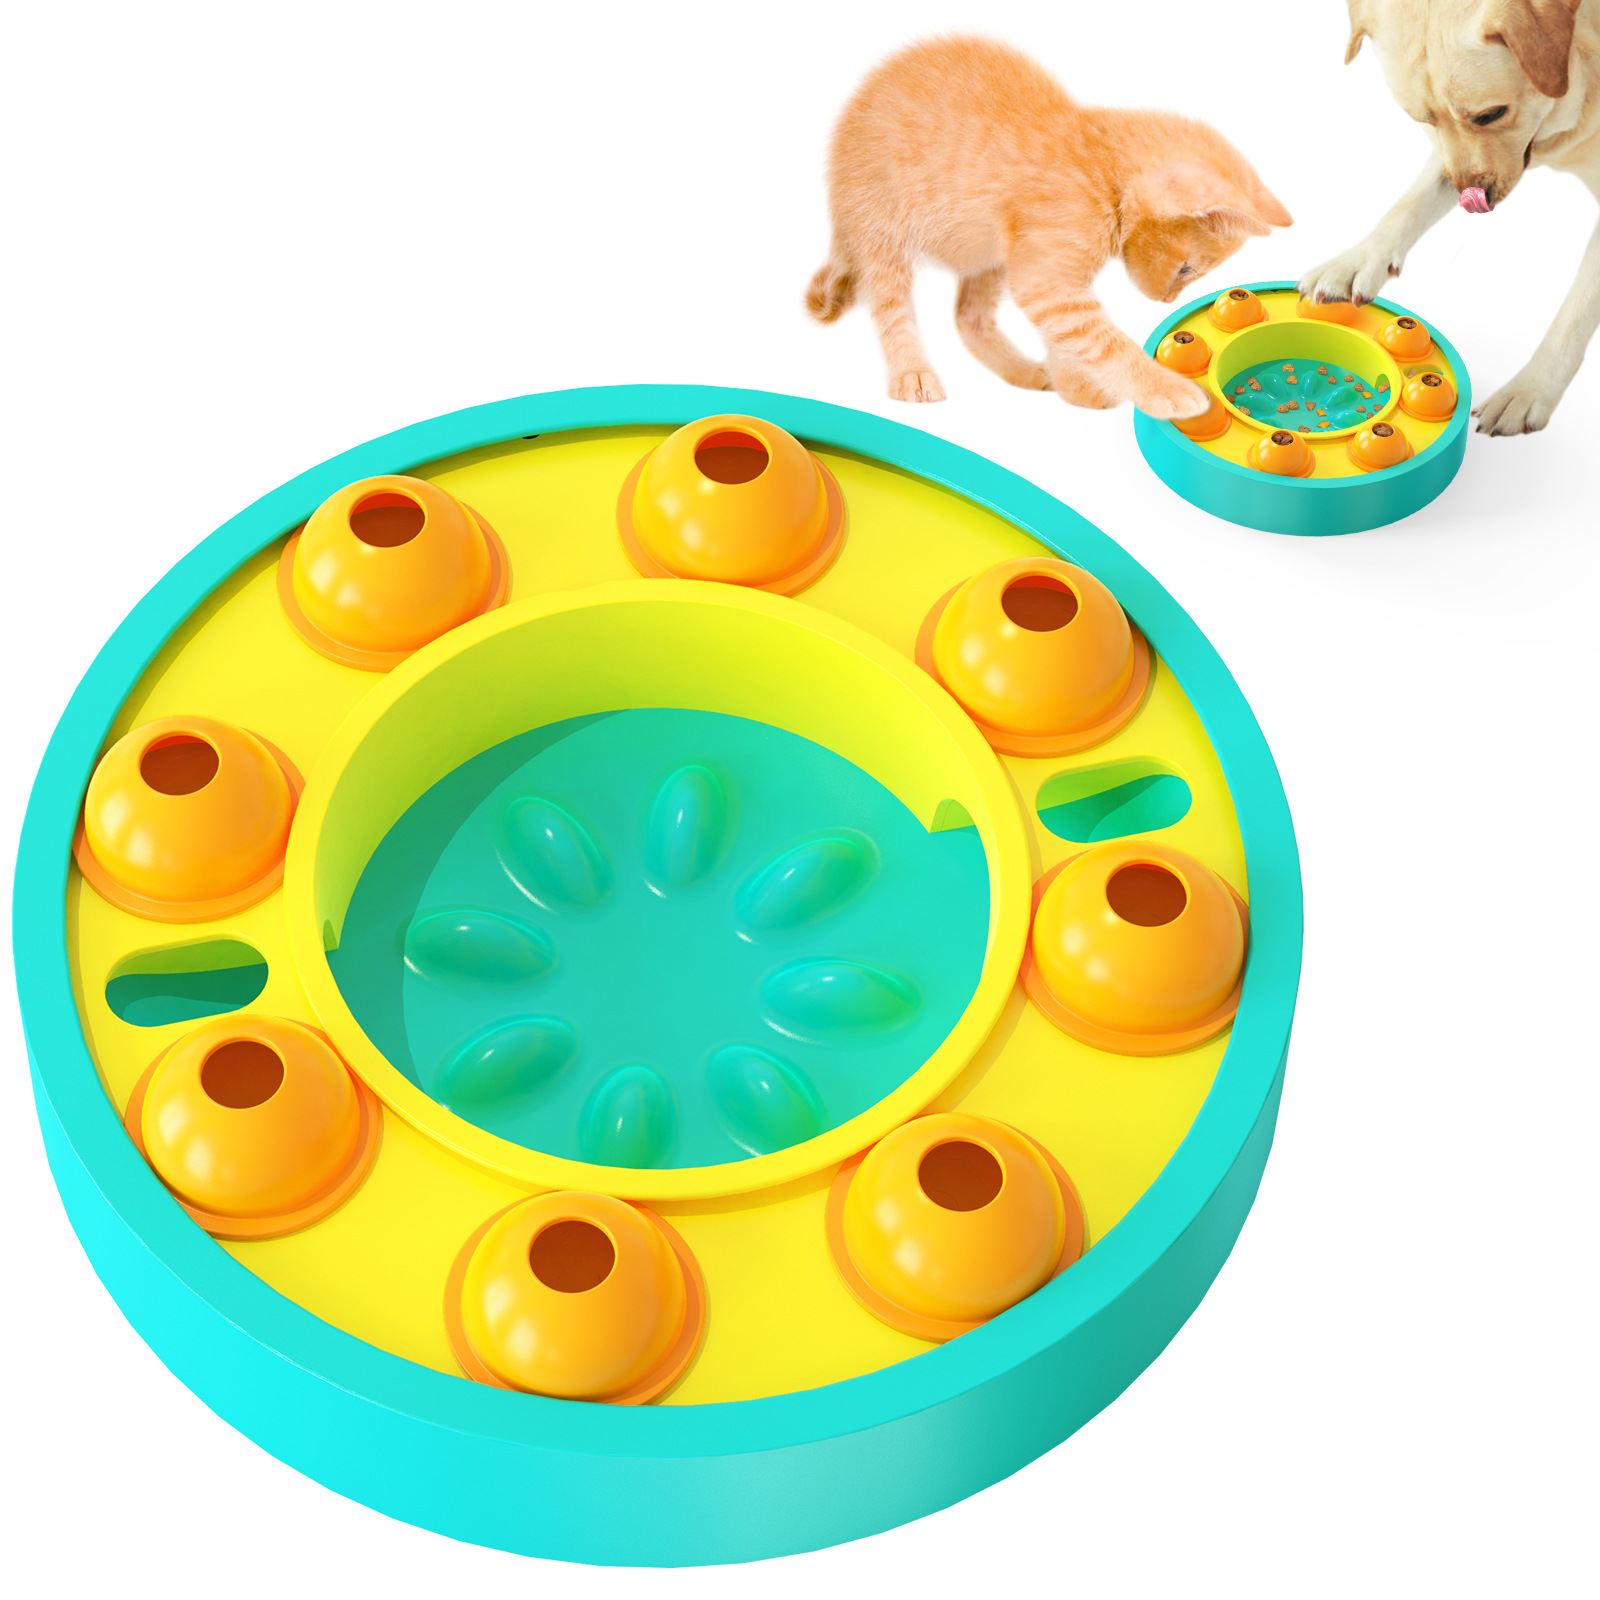 Хот Сале Пуззле Грамофон играчке за дозирање хране за псе